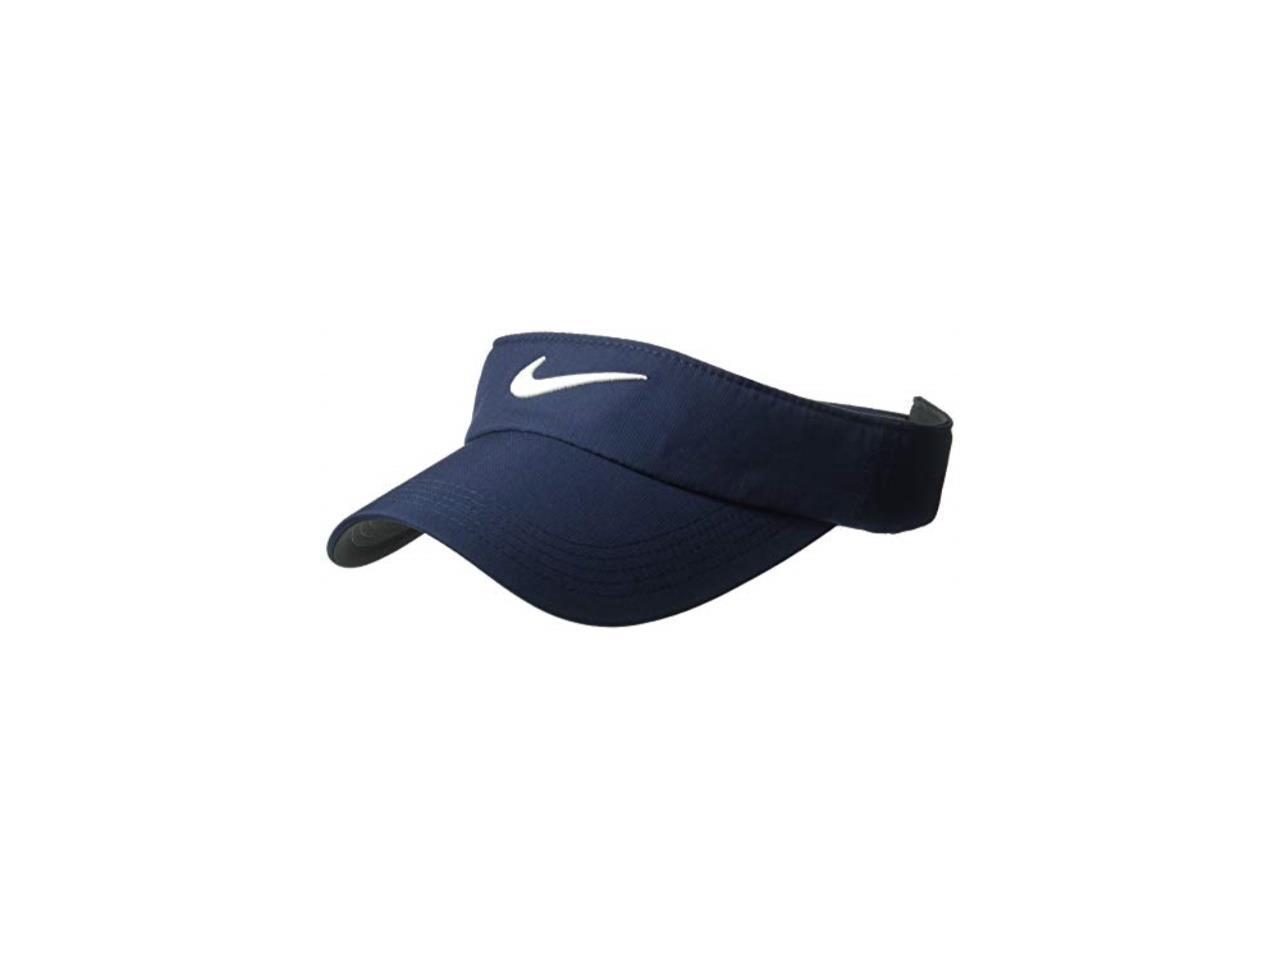 Unisex Nike Golf Visor Drifit Adjustable Sun Visor For Women And Men Obsidian Anthracite White Newegg Com